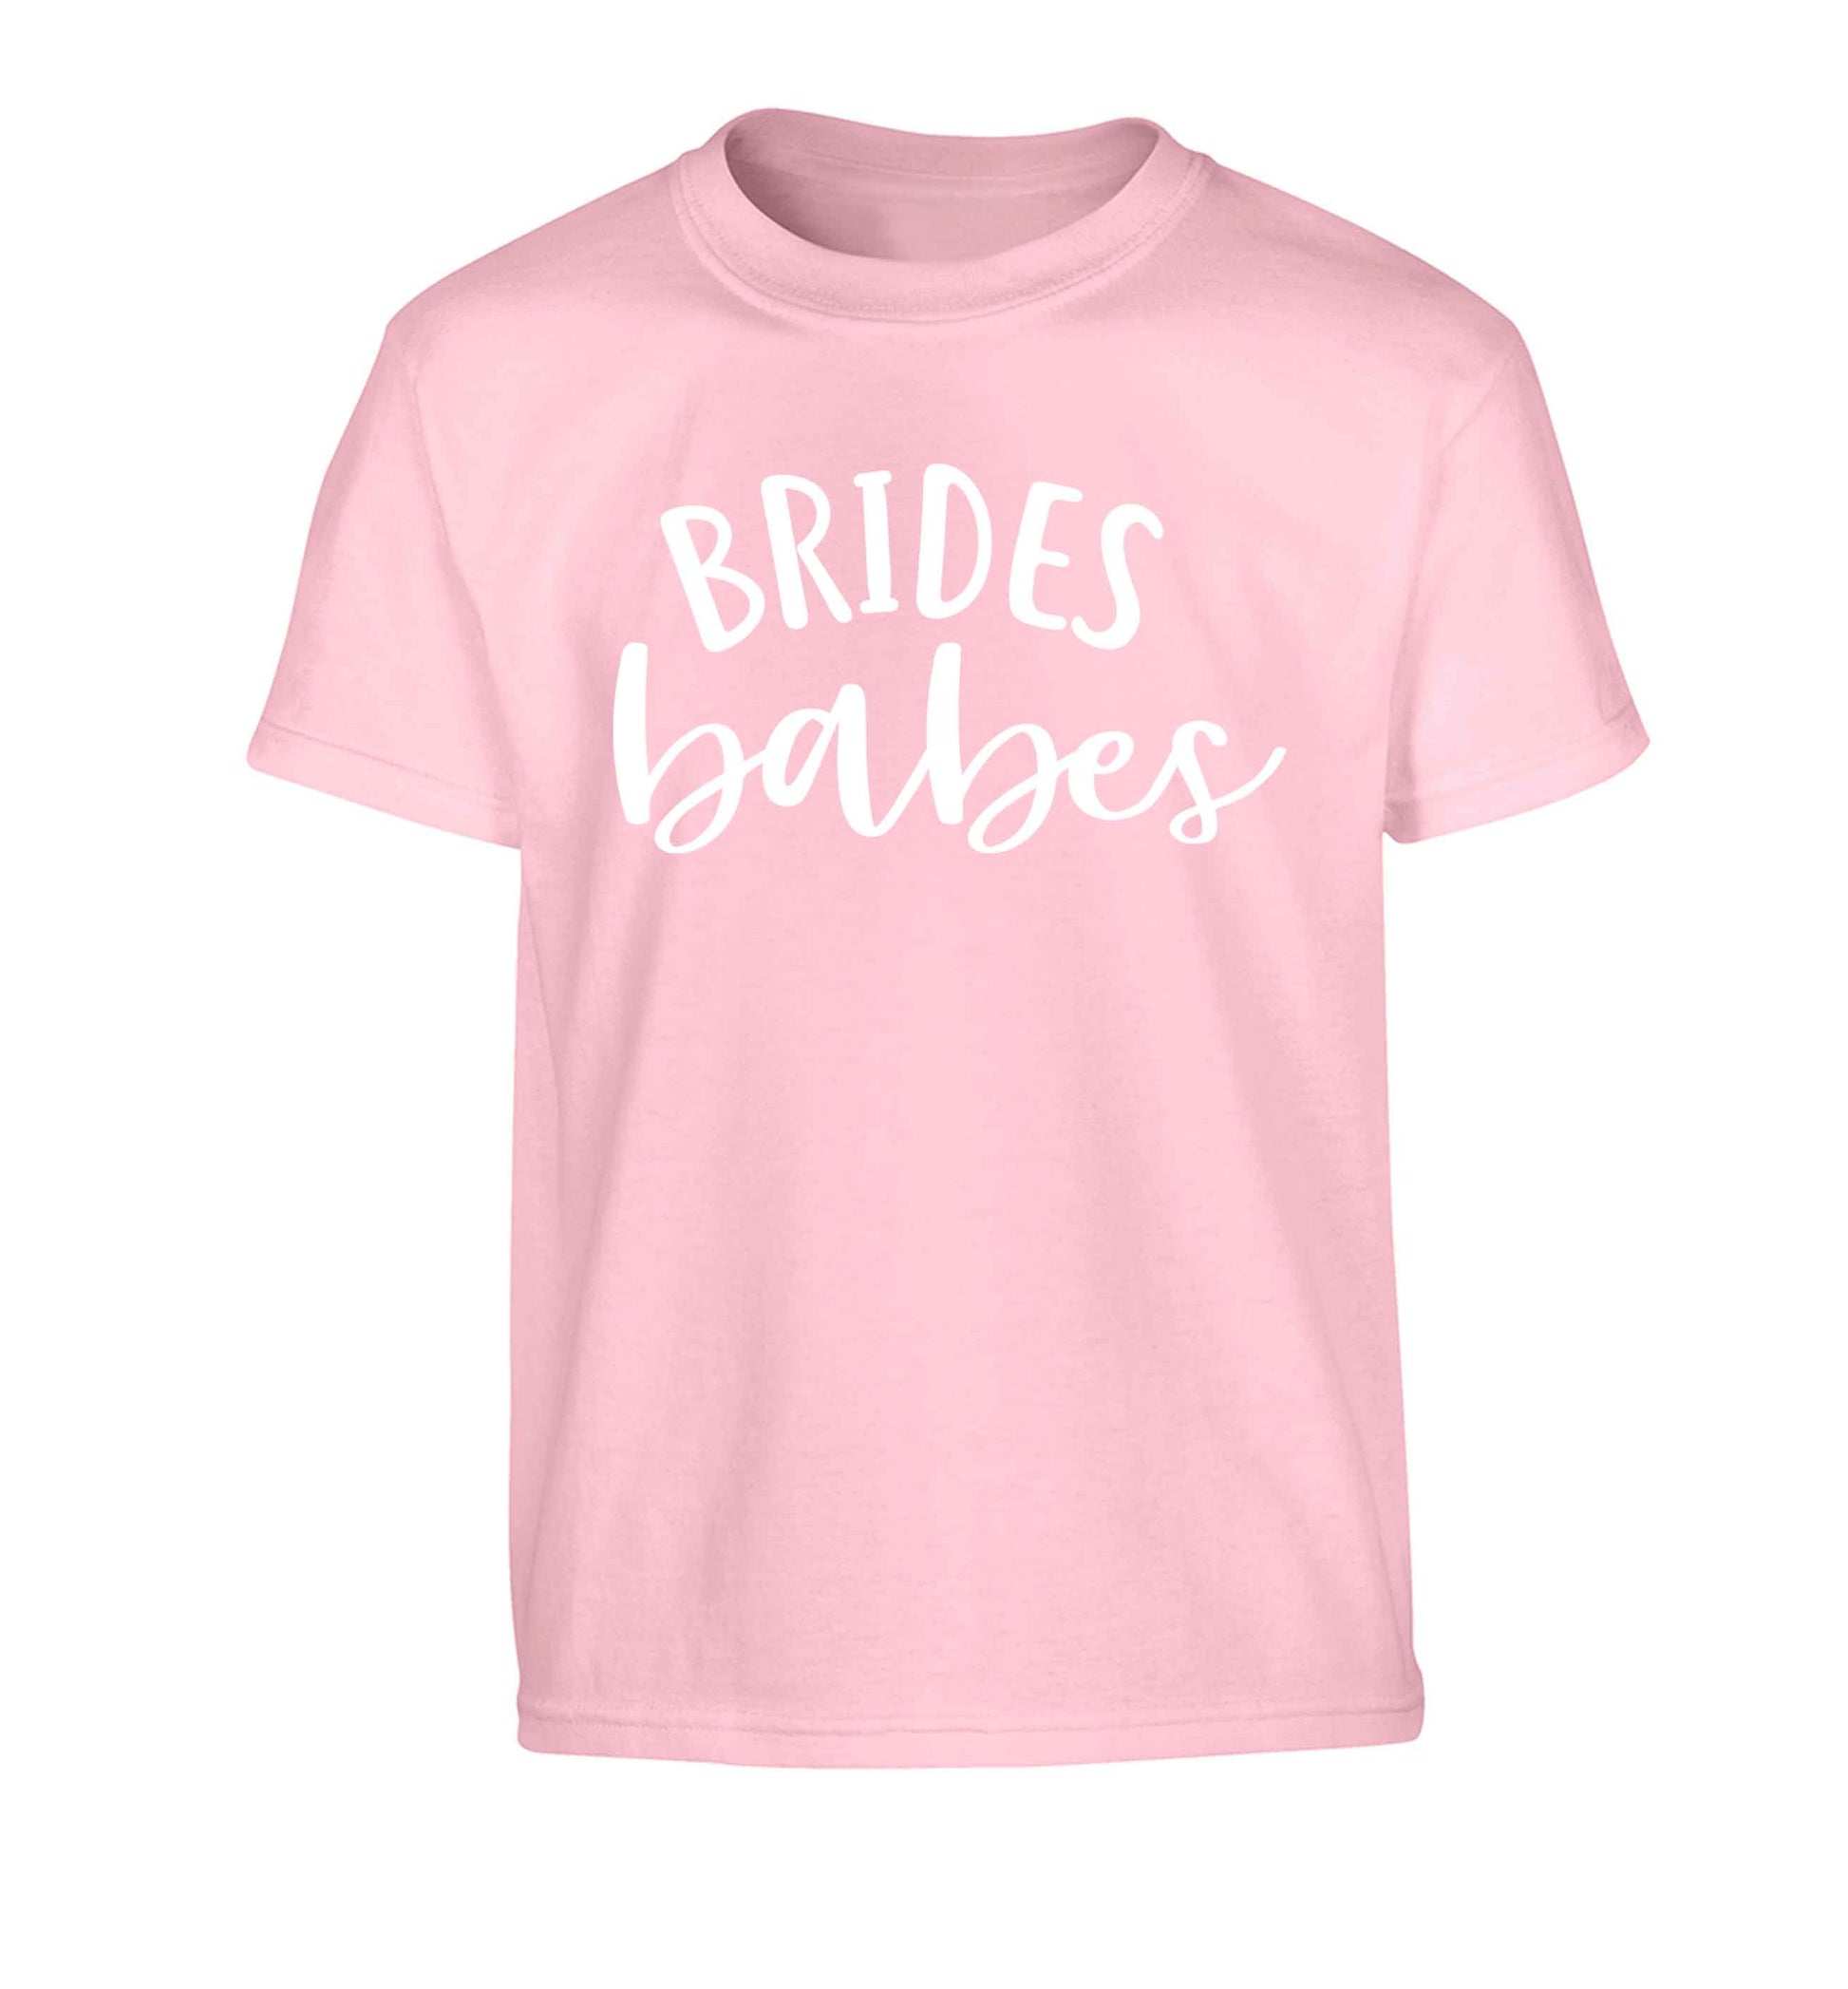 Brides Babes Children's light pink Tshirt 12-13 Years